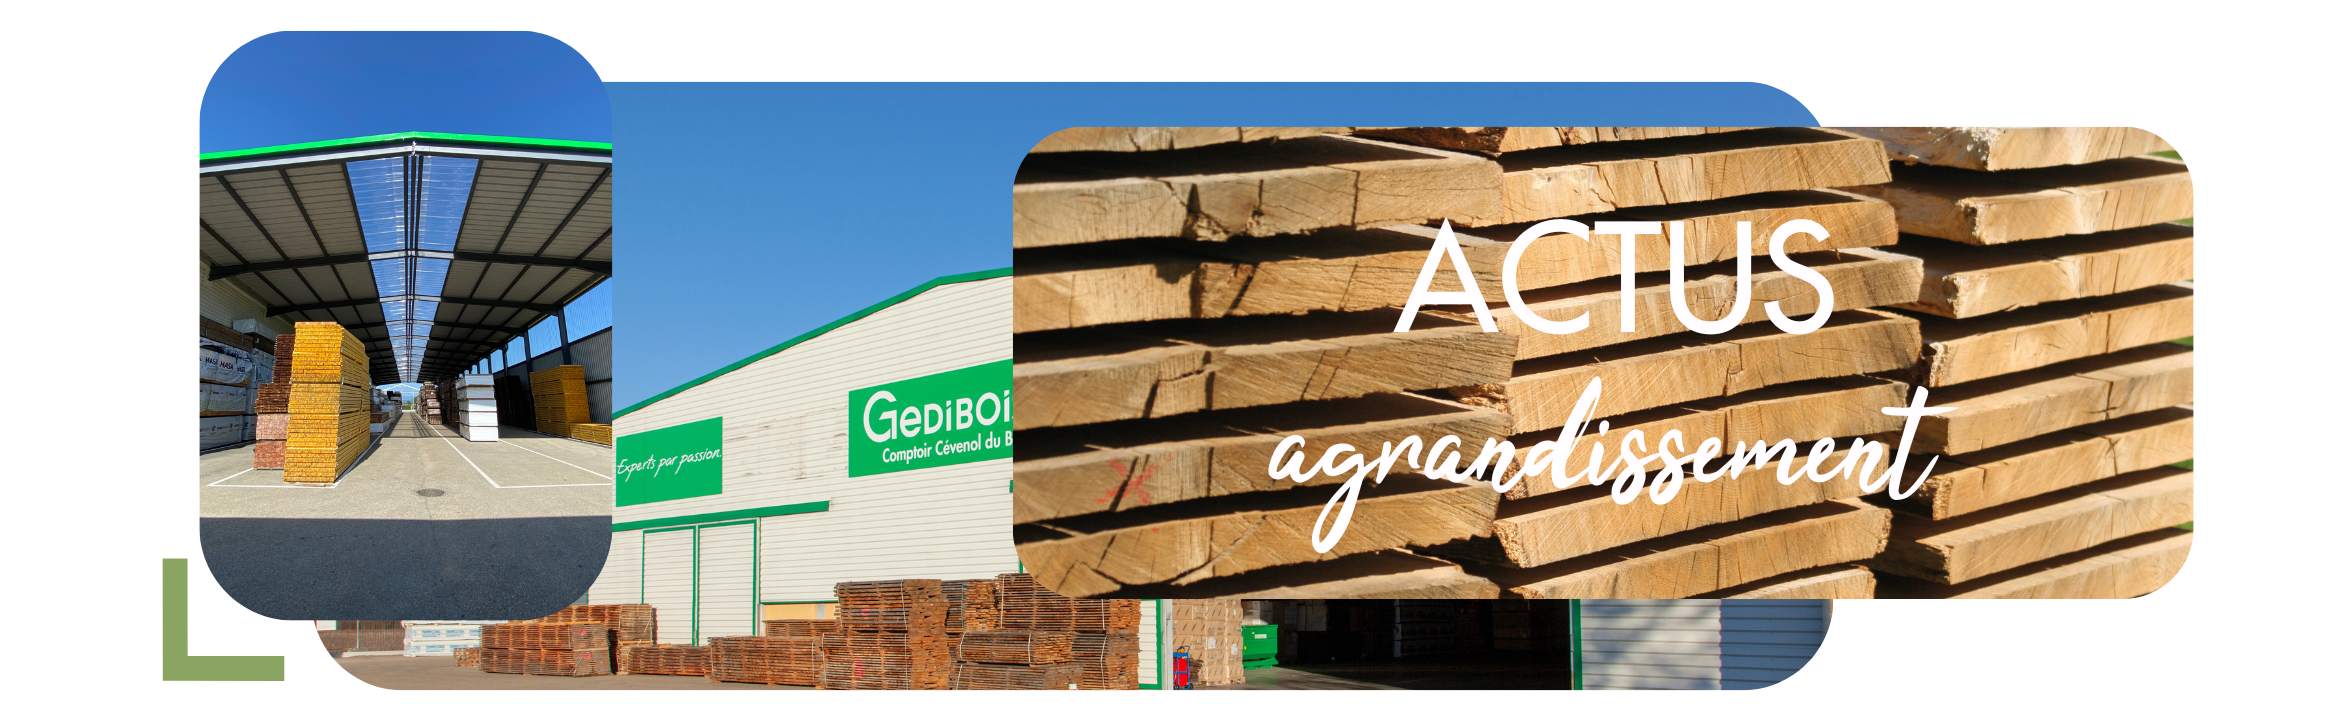 ACTUALITE : Installation de nouveaux racks à Alès et agrandissement de notre plateforme logistique de Cardet